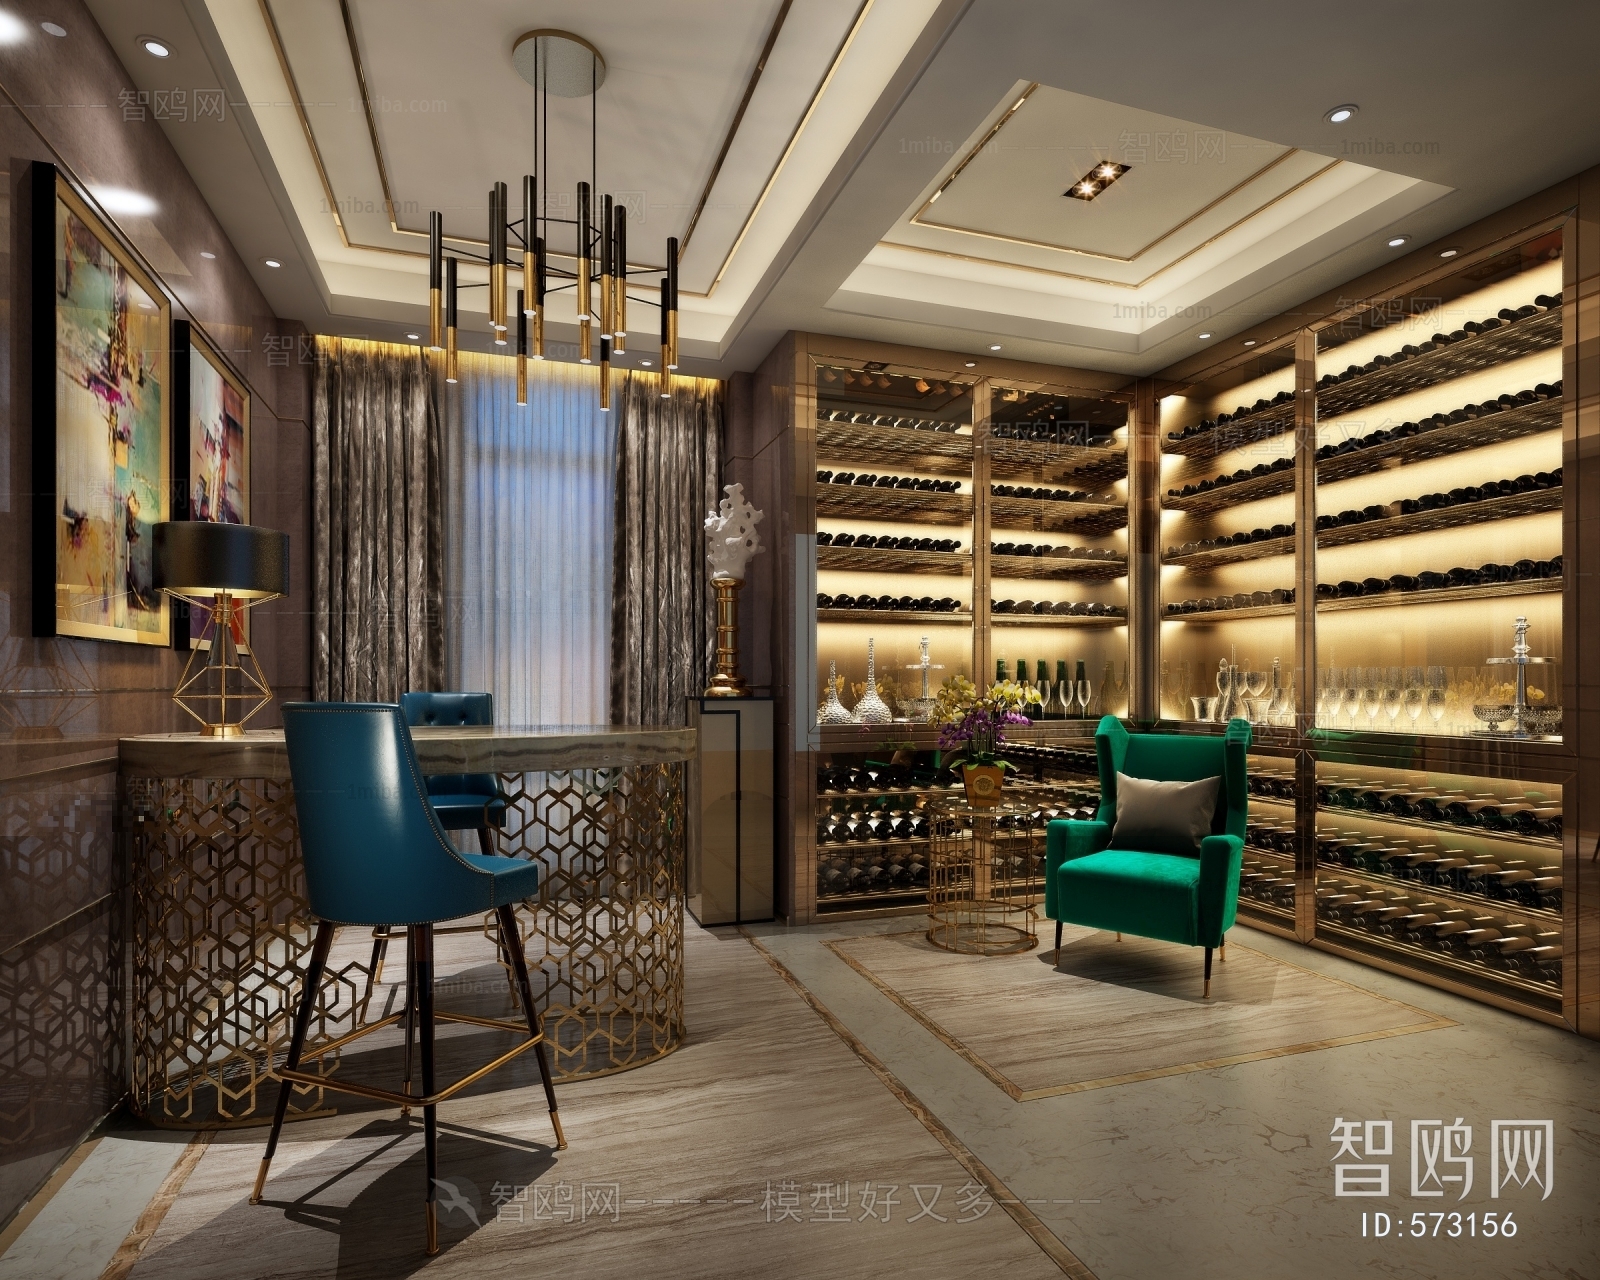 Hong Kong Style Wine Cellar/Wine Tasting Room